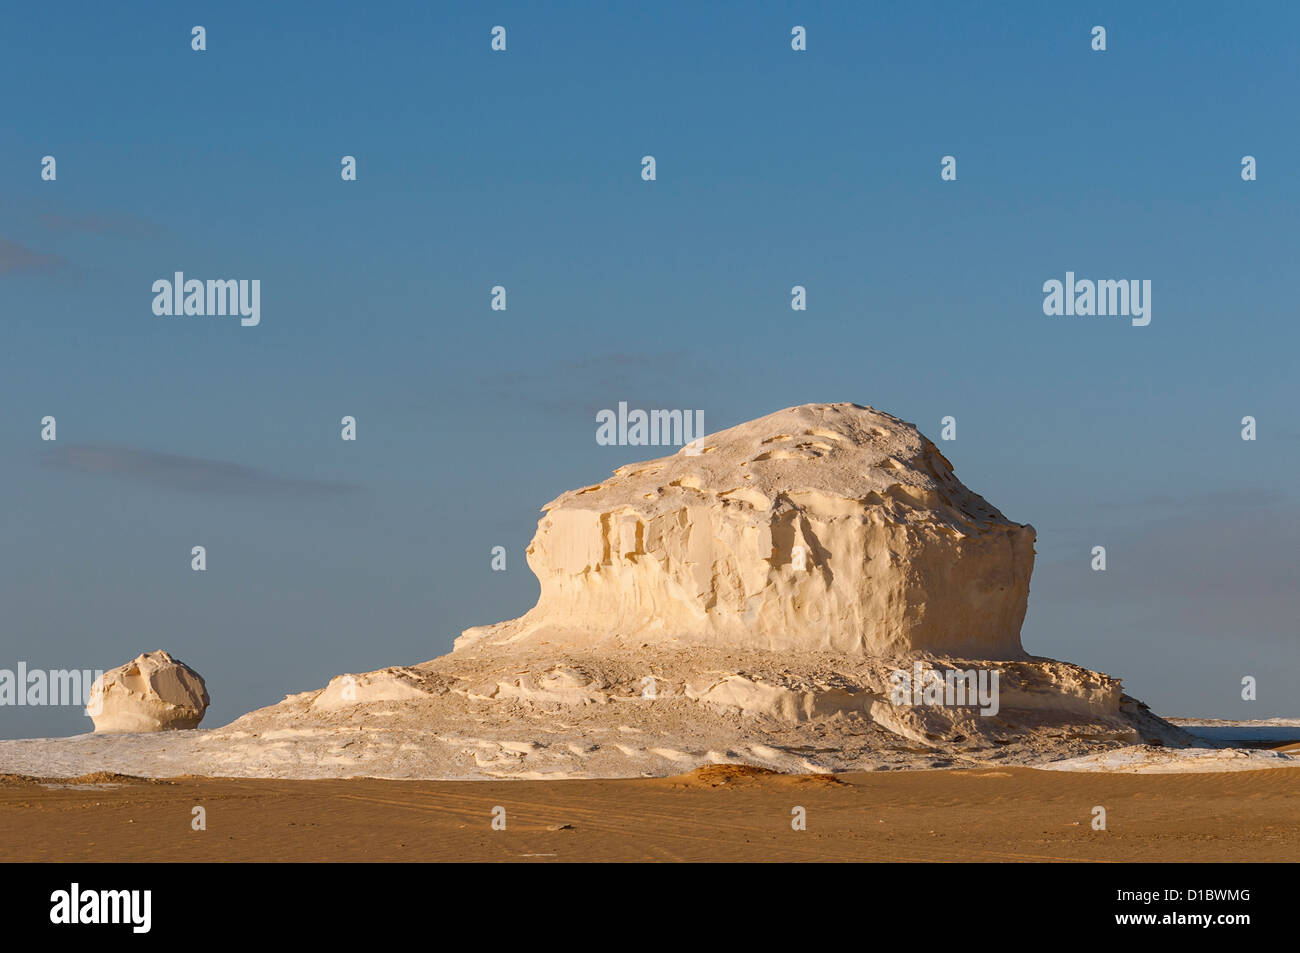 Roches calcaires, le désert blanc (Sahara el Beyda), Égypte Banque D'Images